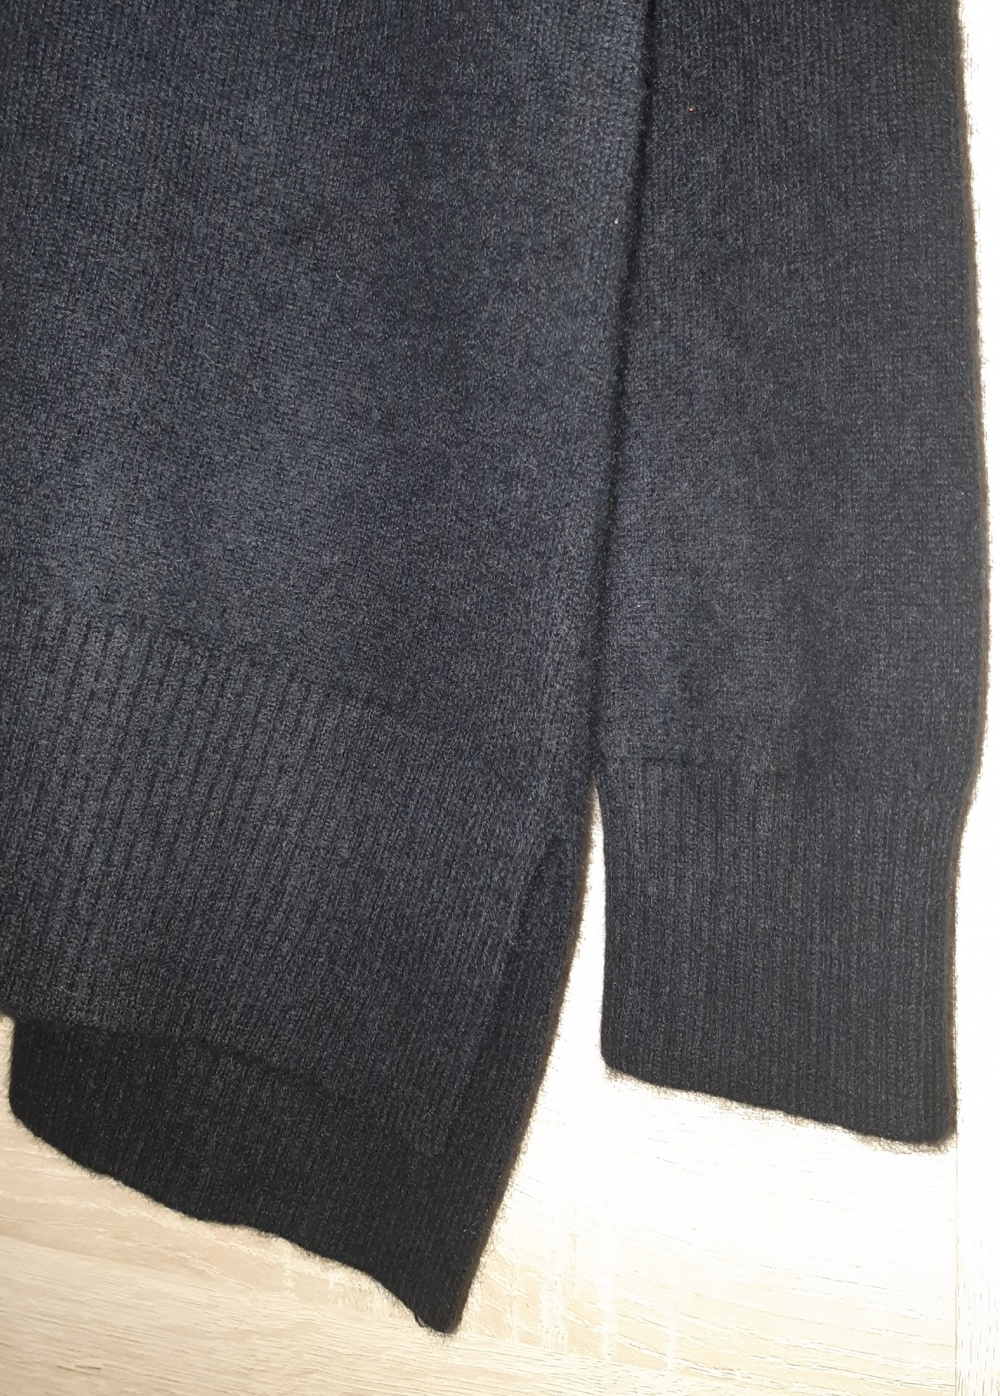 Кашемировый свитер, размер m/l